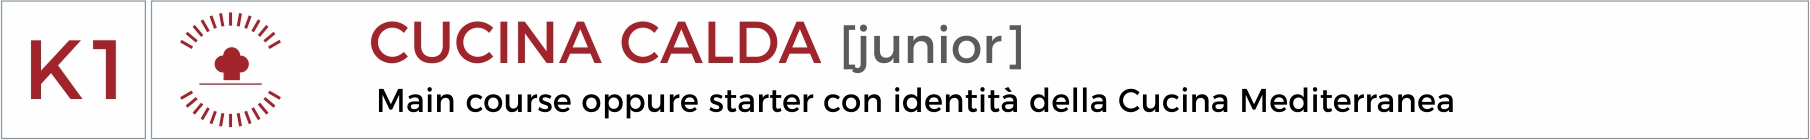 06 K1 junior